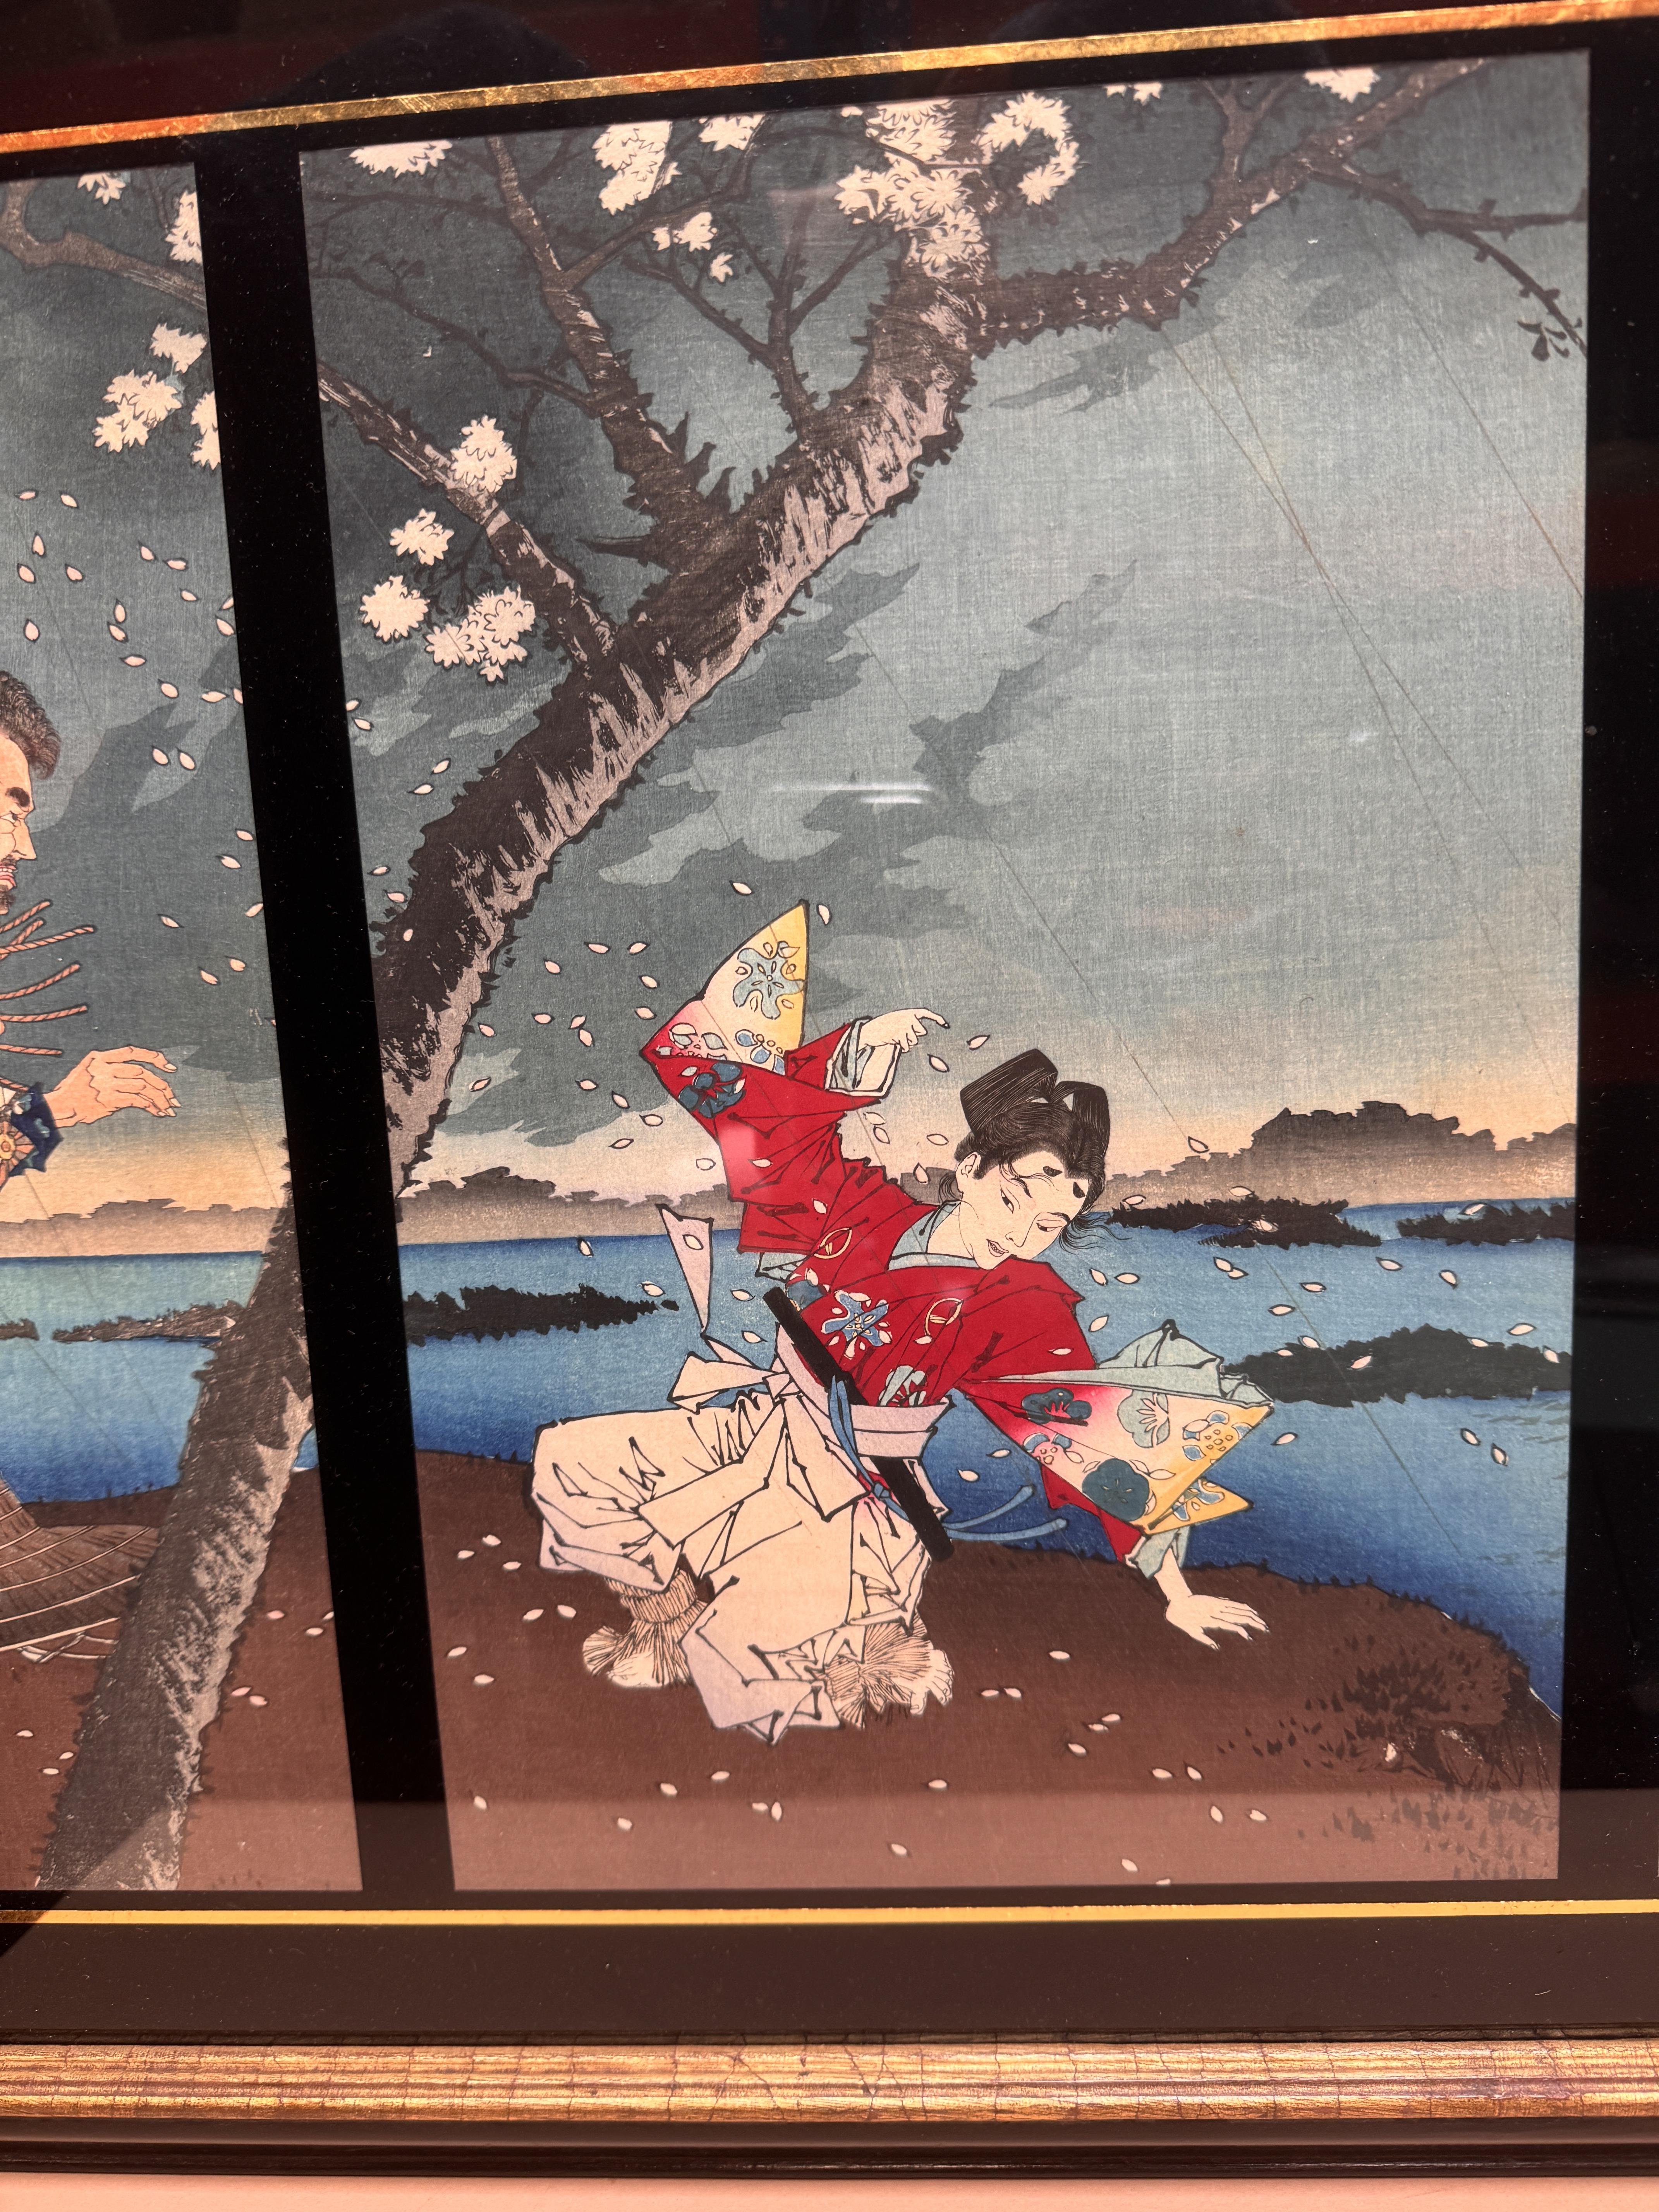 TSUKIOKA YOSHITOSHI (1797 – 1858), MIYAGAWA SHUNTEI (1873 – 1914) Two Japanese woodblock print tript - Image 16 of 23